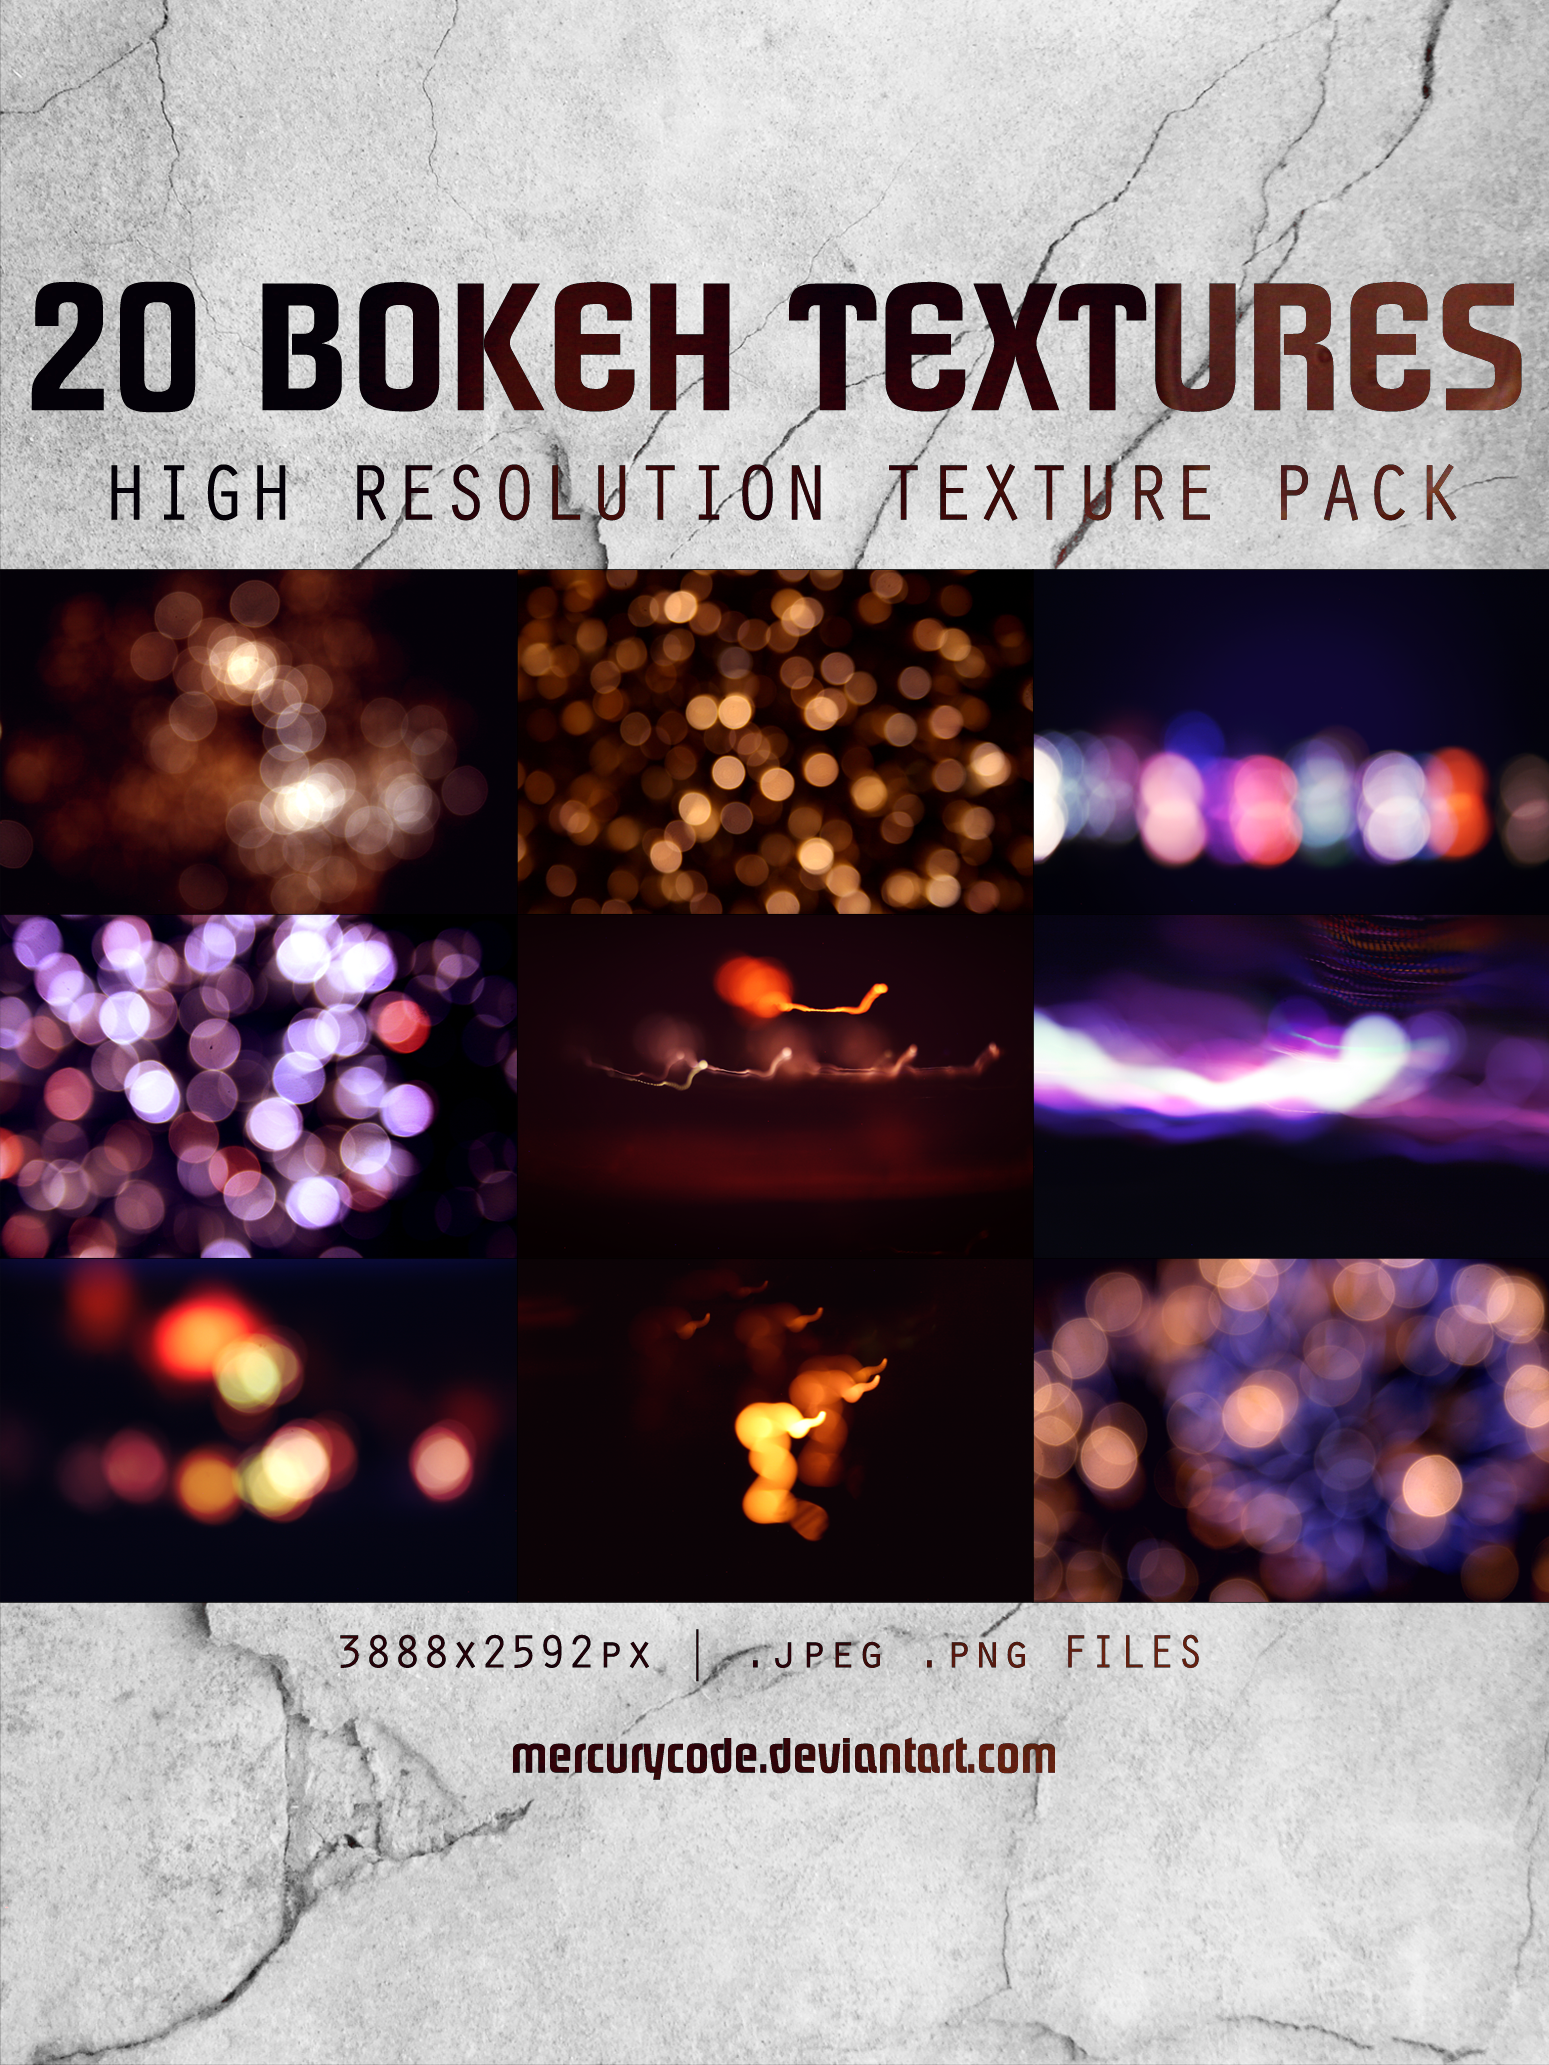 Texture Pack 09: Bokeh [HI RES]